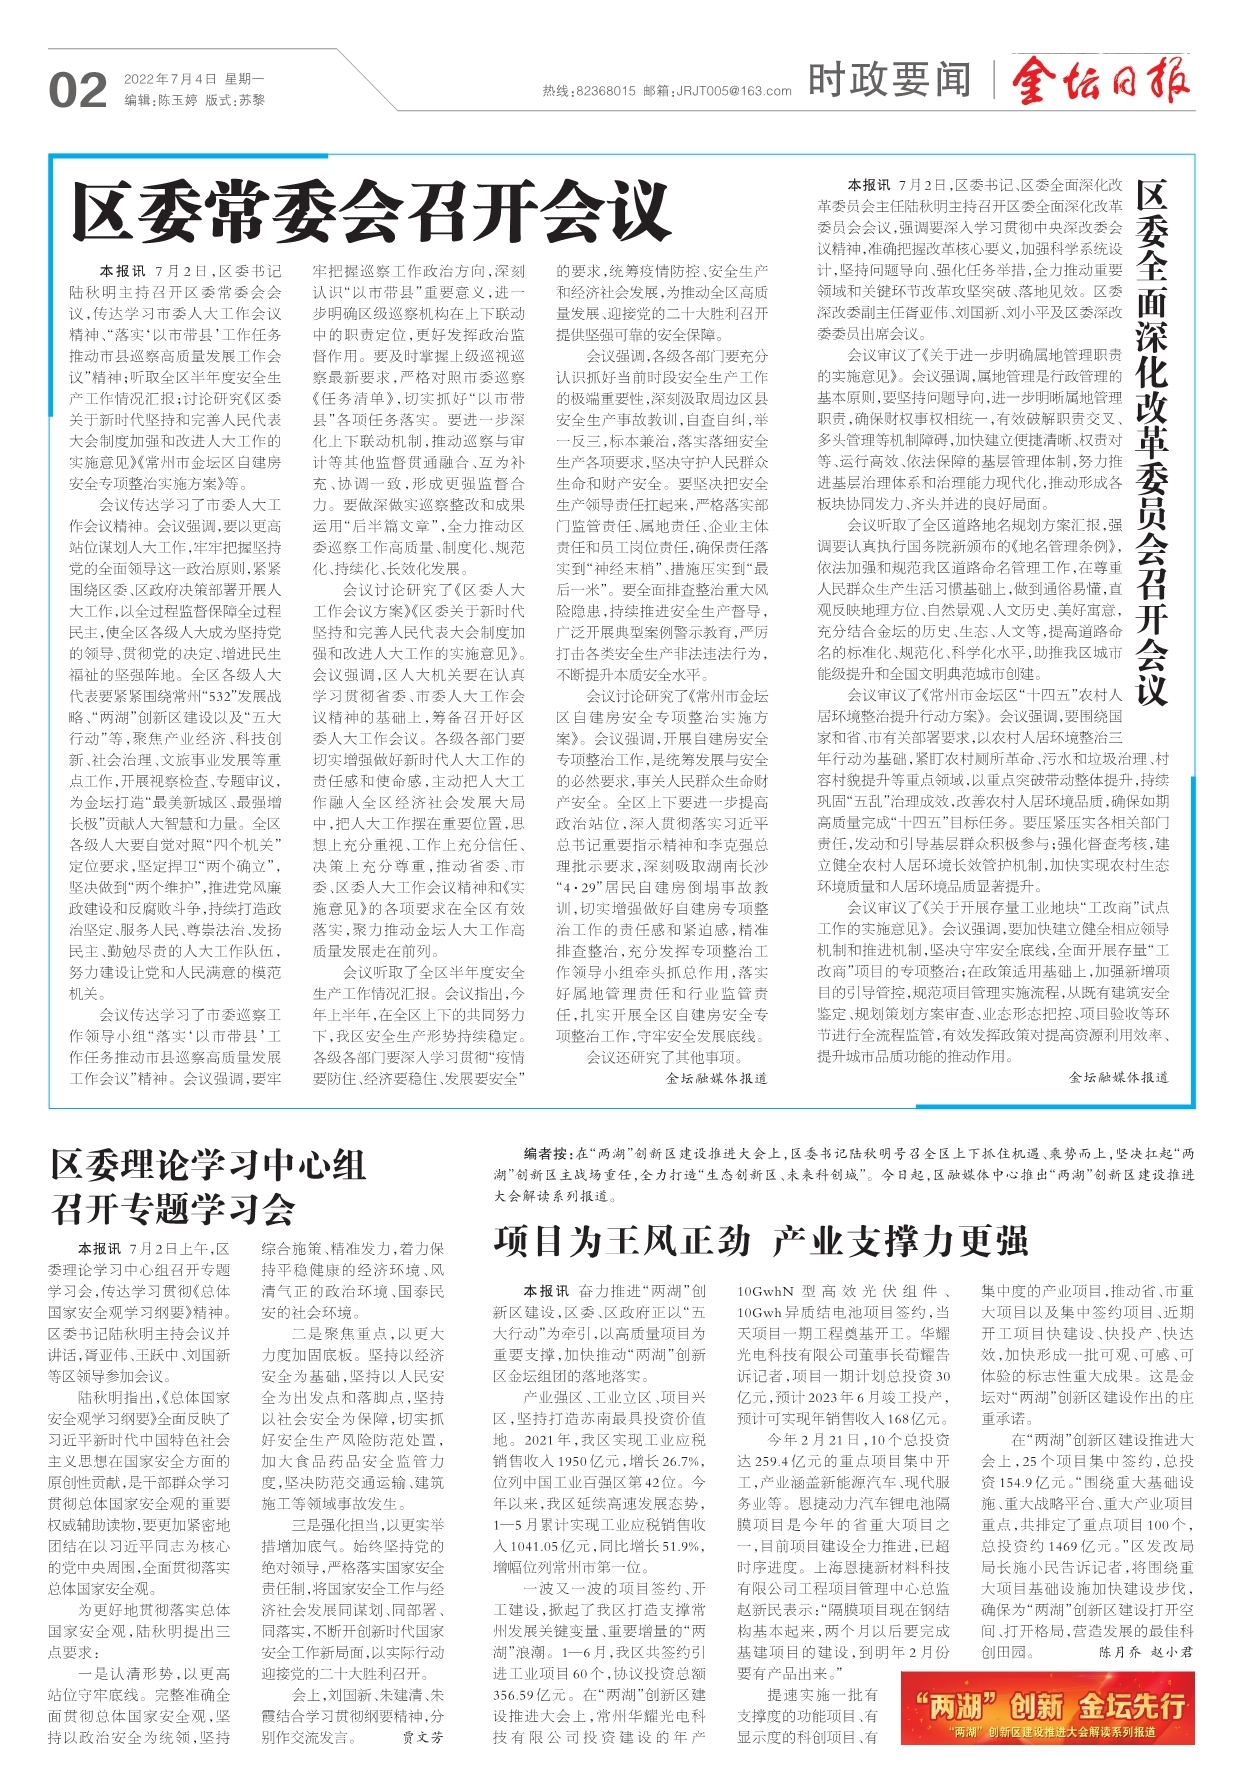 全面深化改革7年间四川评出35个“典型案例”---四川日报电子版